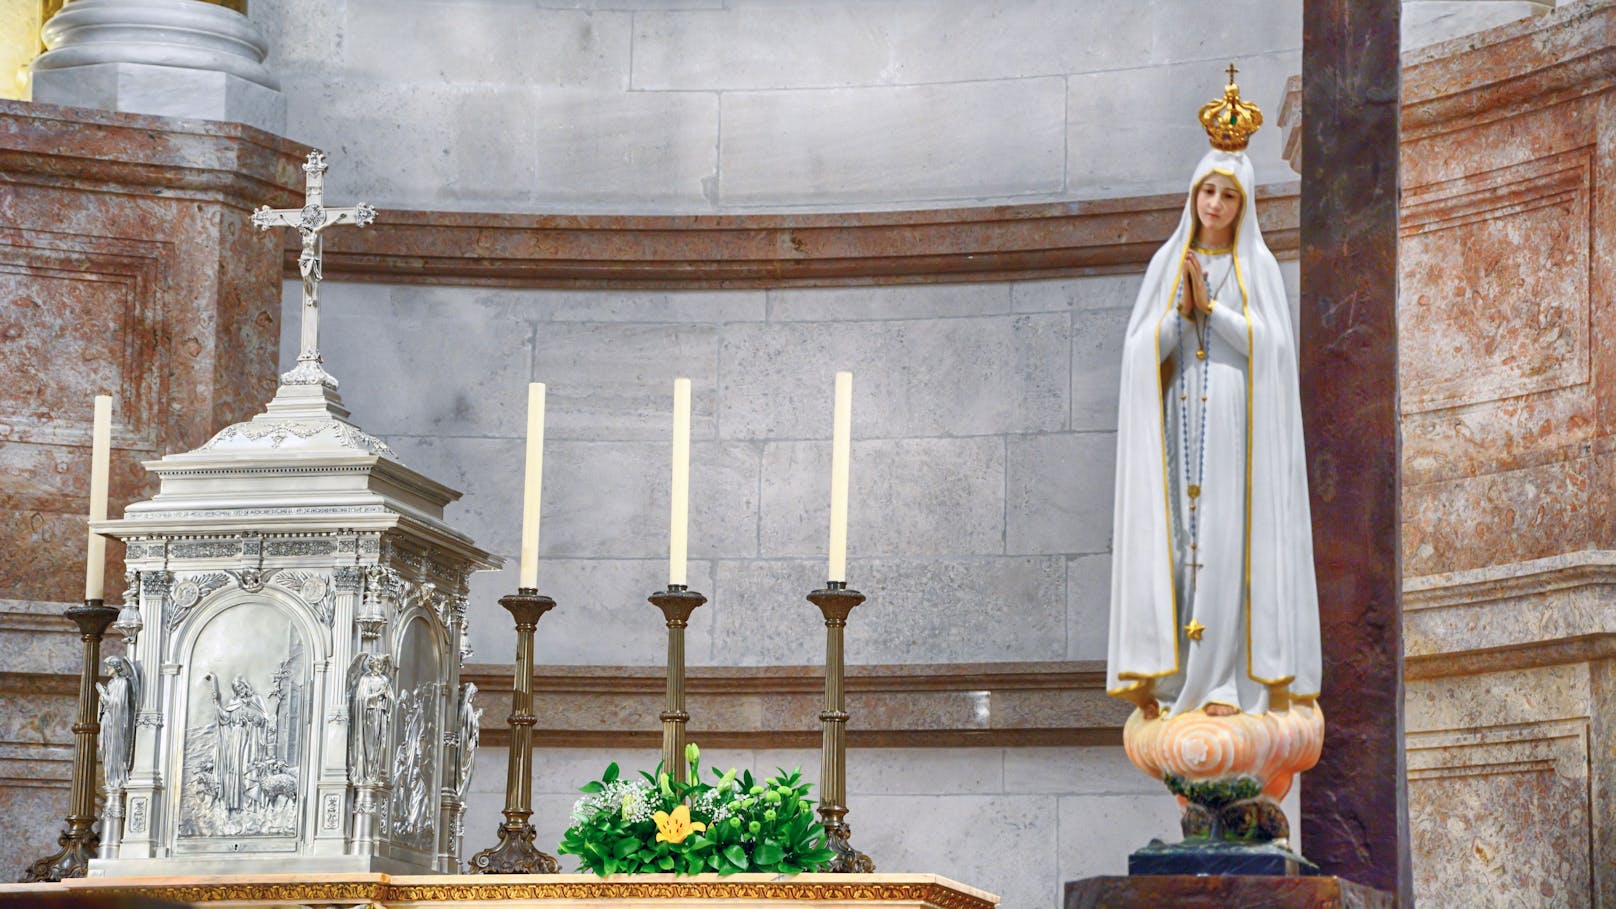 Madonna in Wien demoliert, Kreuz aus Kirche gestohlen